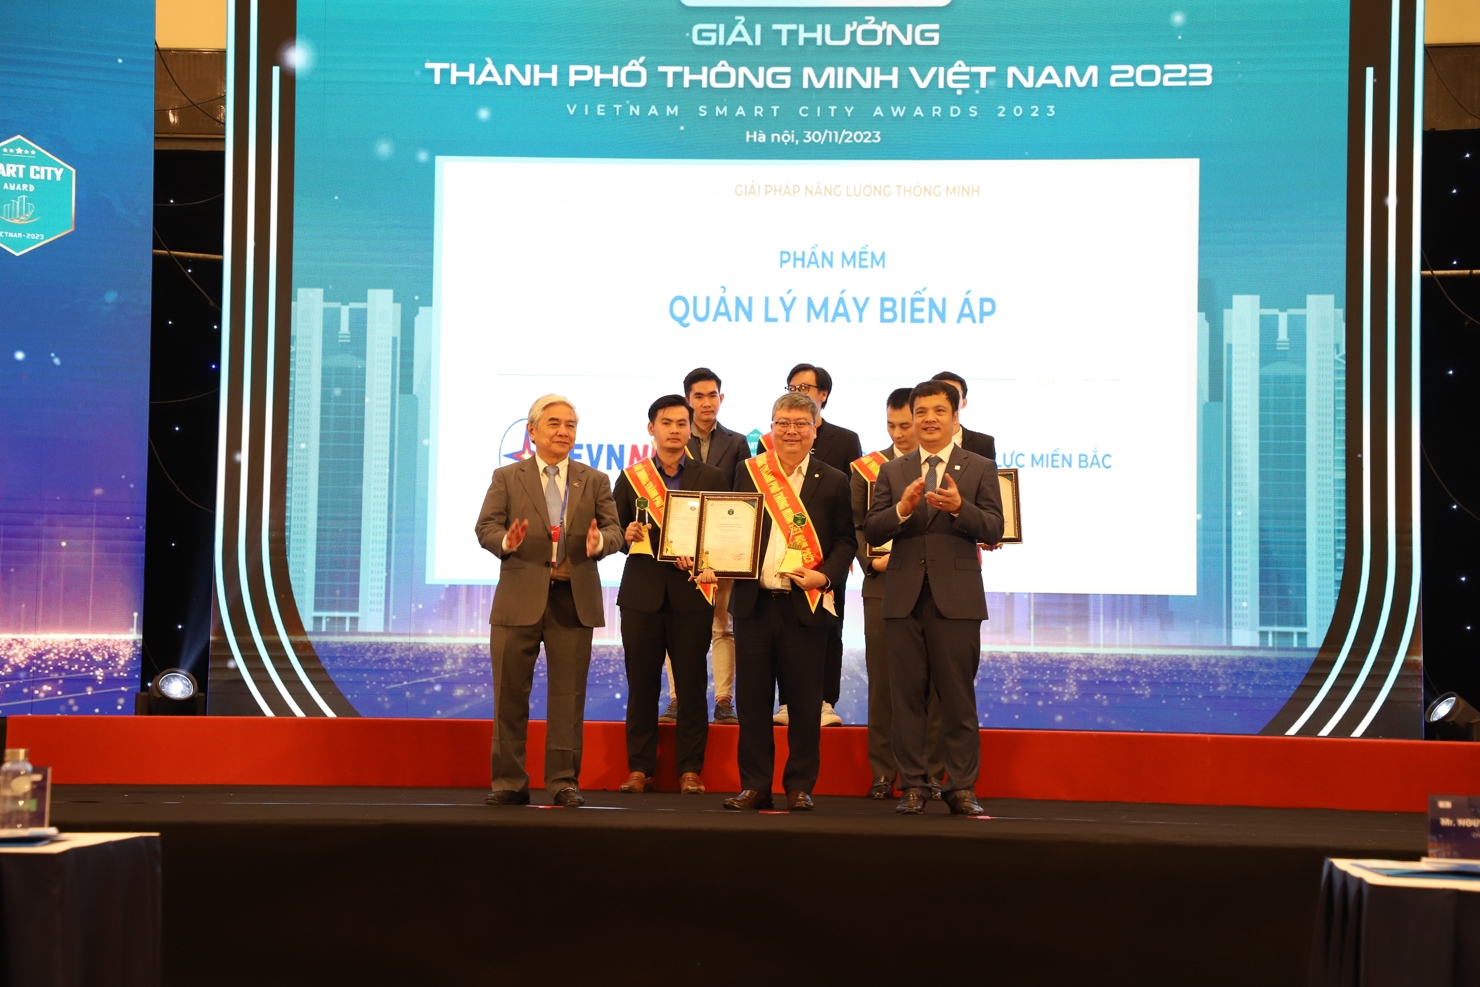 Ông Vũ Đình Khiêm - Giám đốc Công ty công nghệ thông tin Điện lực miền Bắc đại diện EVNNPC nhận giải thưởng.